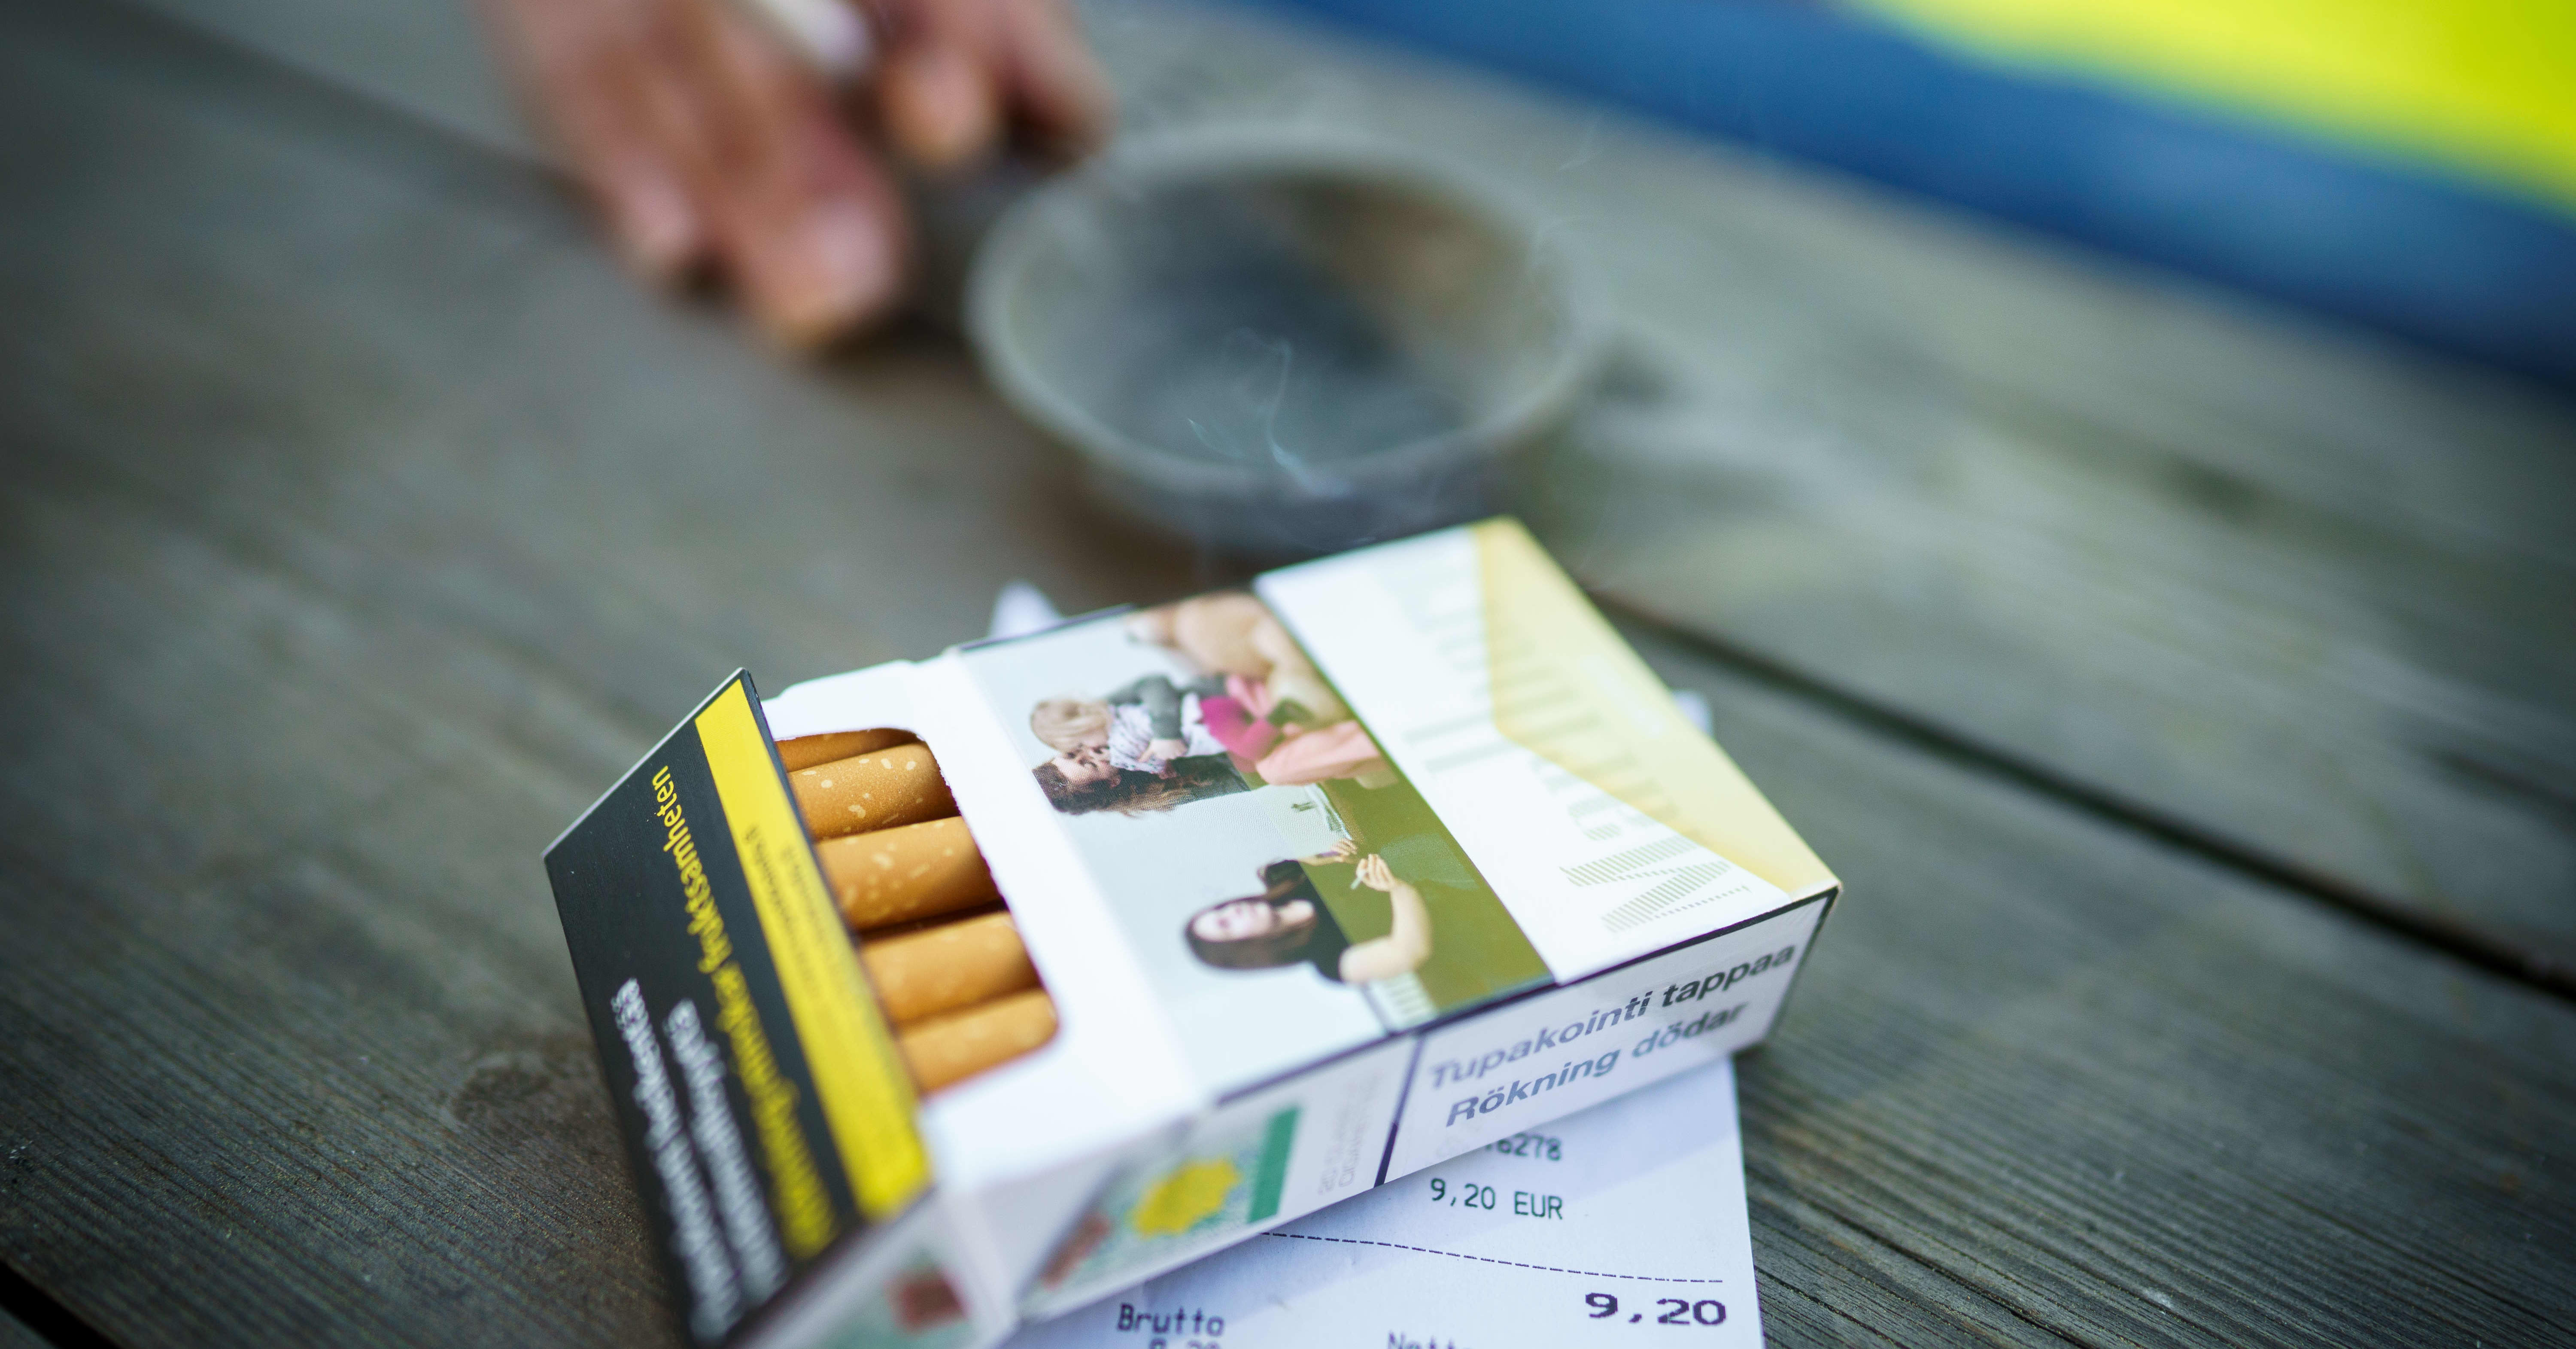 Haittaverojen korotusautomaatti yskähtelee: tupakkaveron korotuksilla on paikattu tupakoinnin vähenemistä, ja pian yksi aski voi maksaa 10 euroa